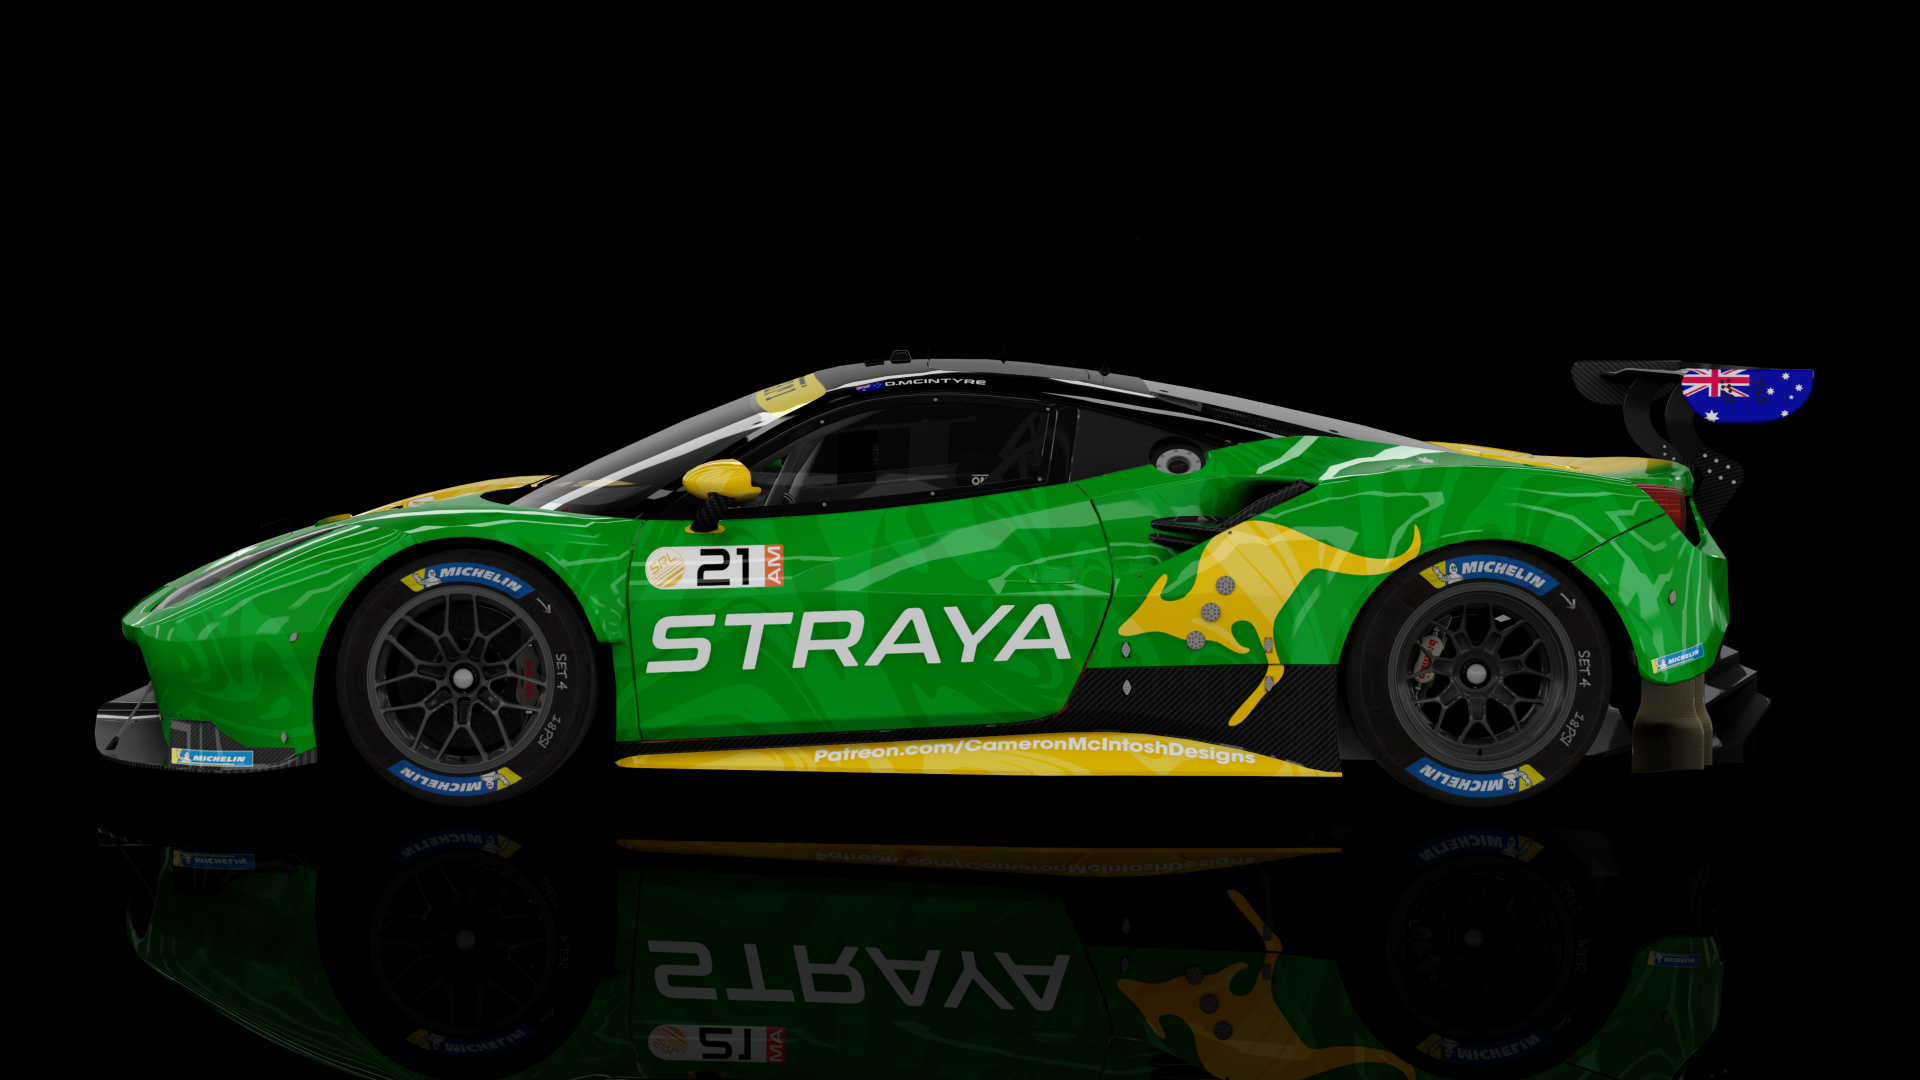 2018 Ferrari 488 GTE Evo [Michelotto], skin 2024 #21 Team Straya SRL